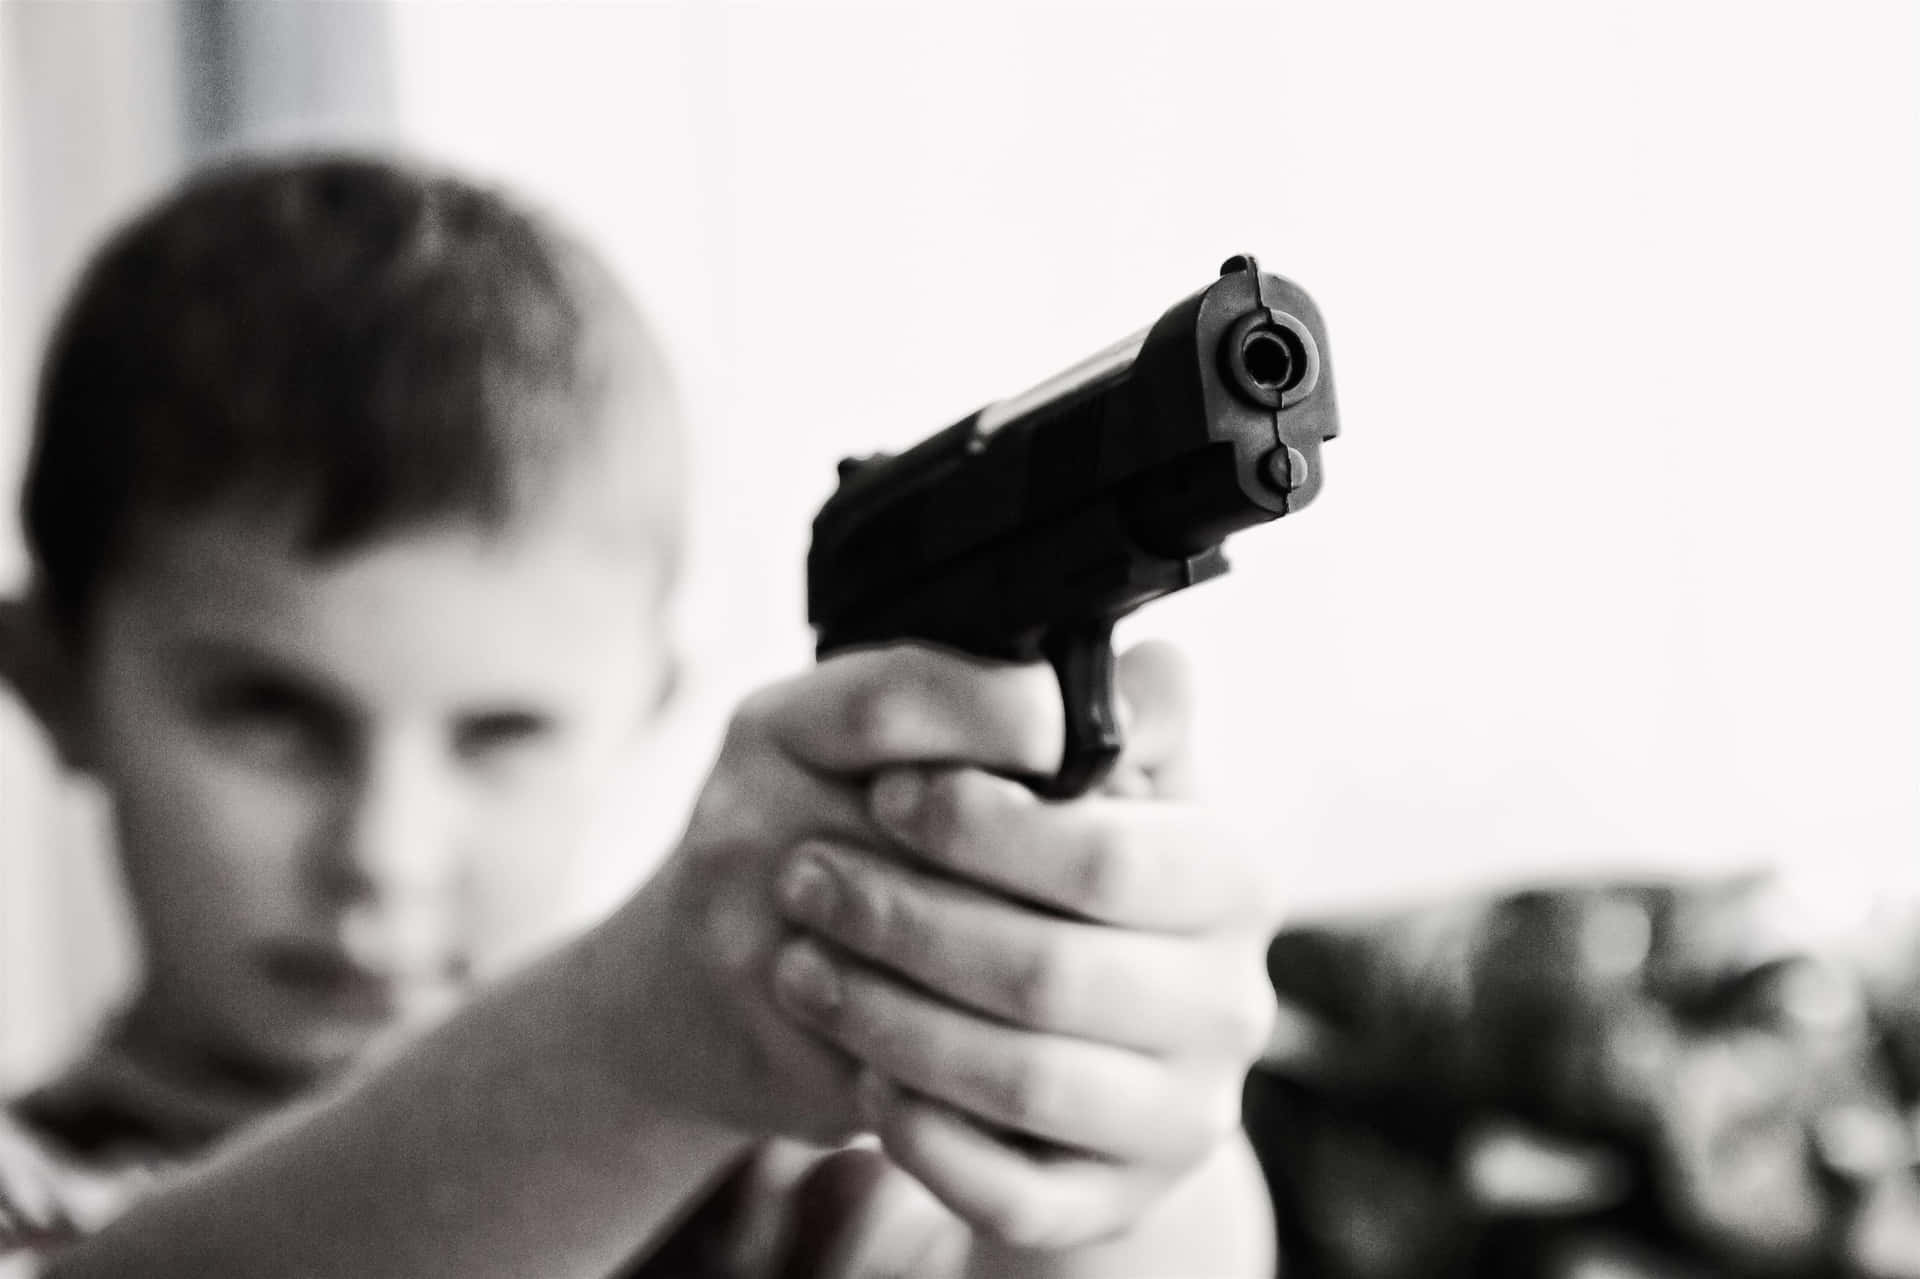 Enpojke Håller I En Pistol I Sin Hand